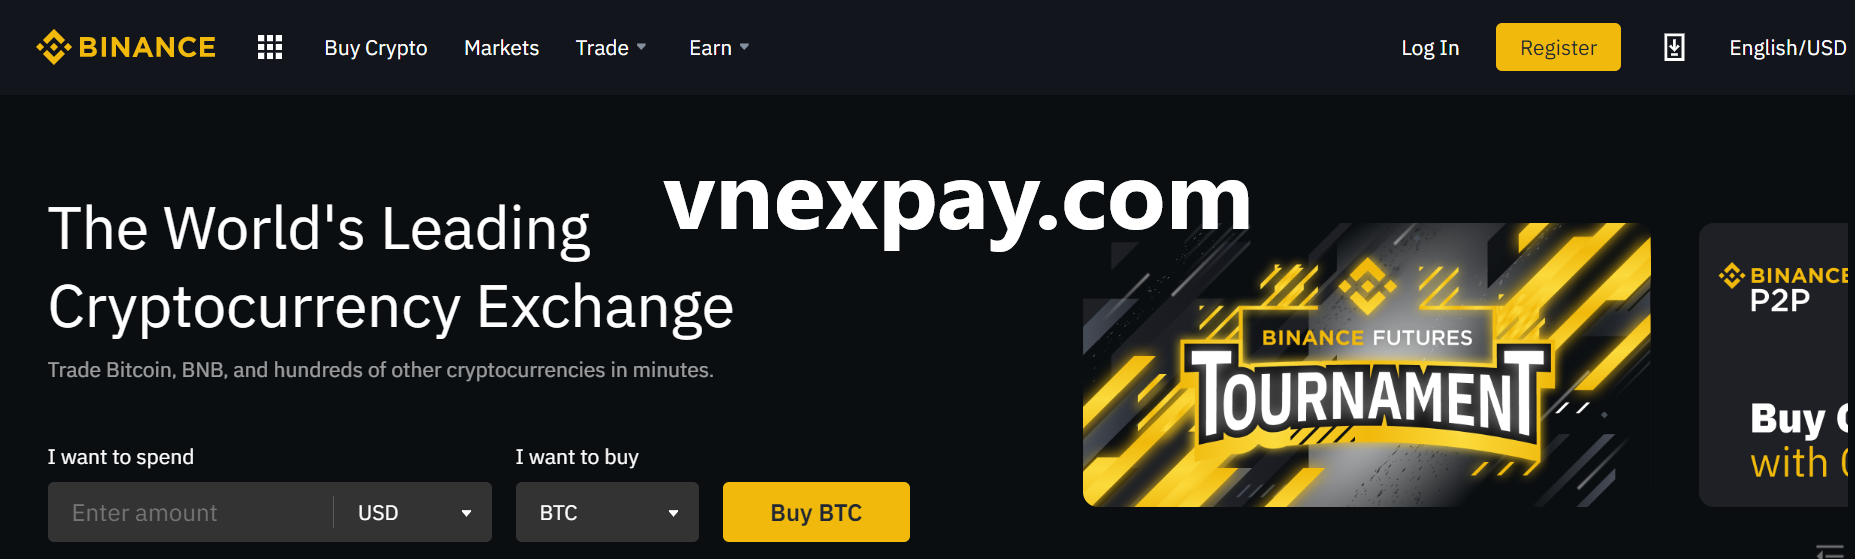 Hướng dẫn ký sàn Binance nhận và chuyển Bitcoin, Ethereum, USDT miễn phí khi giao dịch tại Vnexpay.com